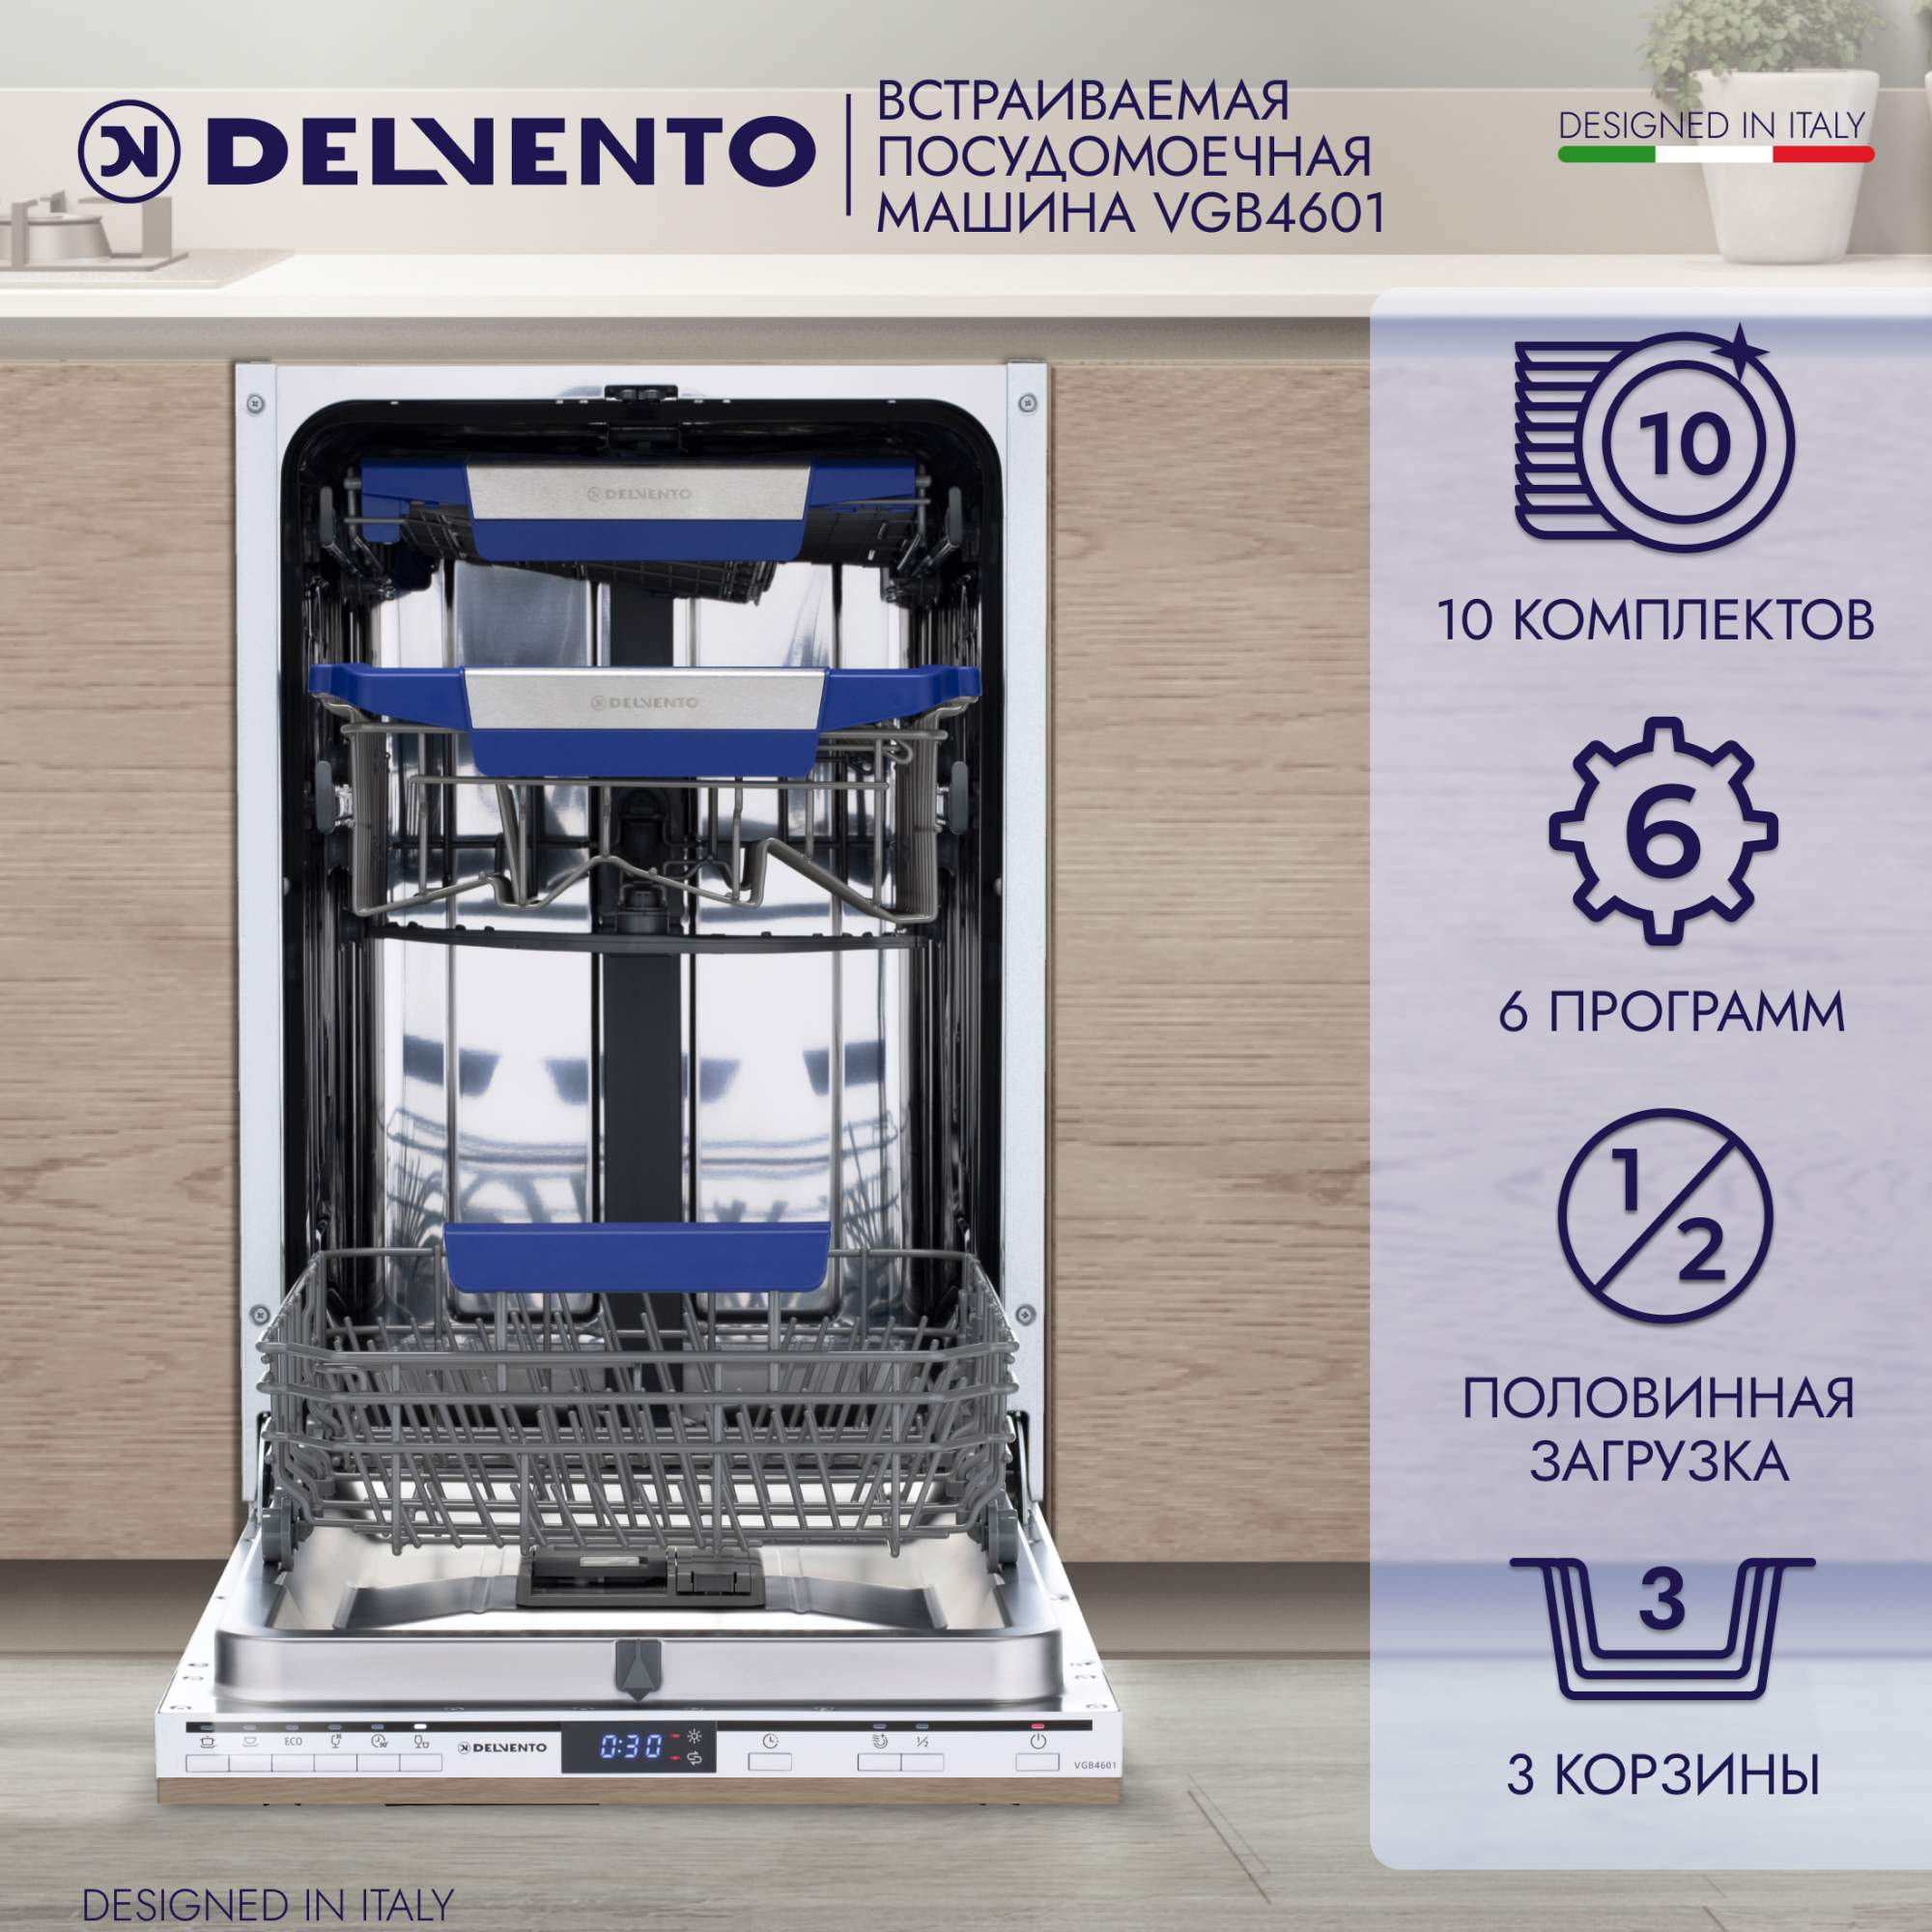 Встраиваемая посудомоечная машина DELVENTO VGB4601, купить в Москве, цены в интернет-магазинах на Мегамаркет